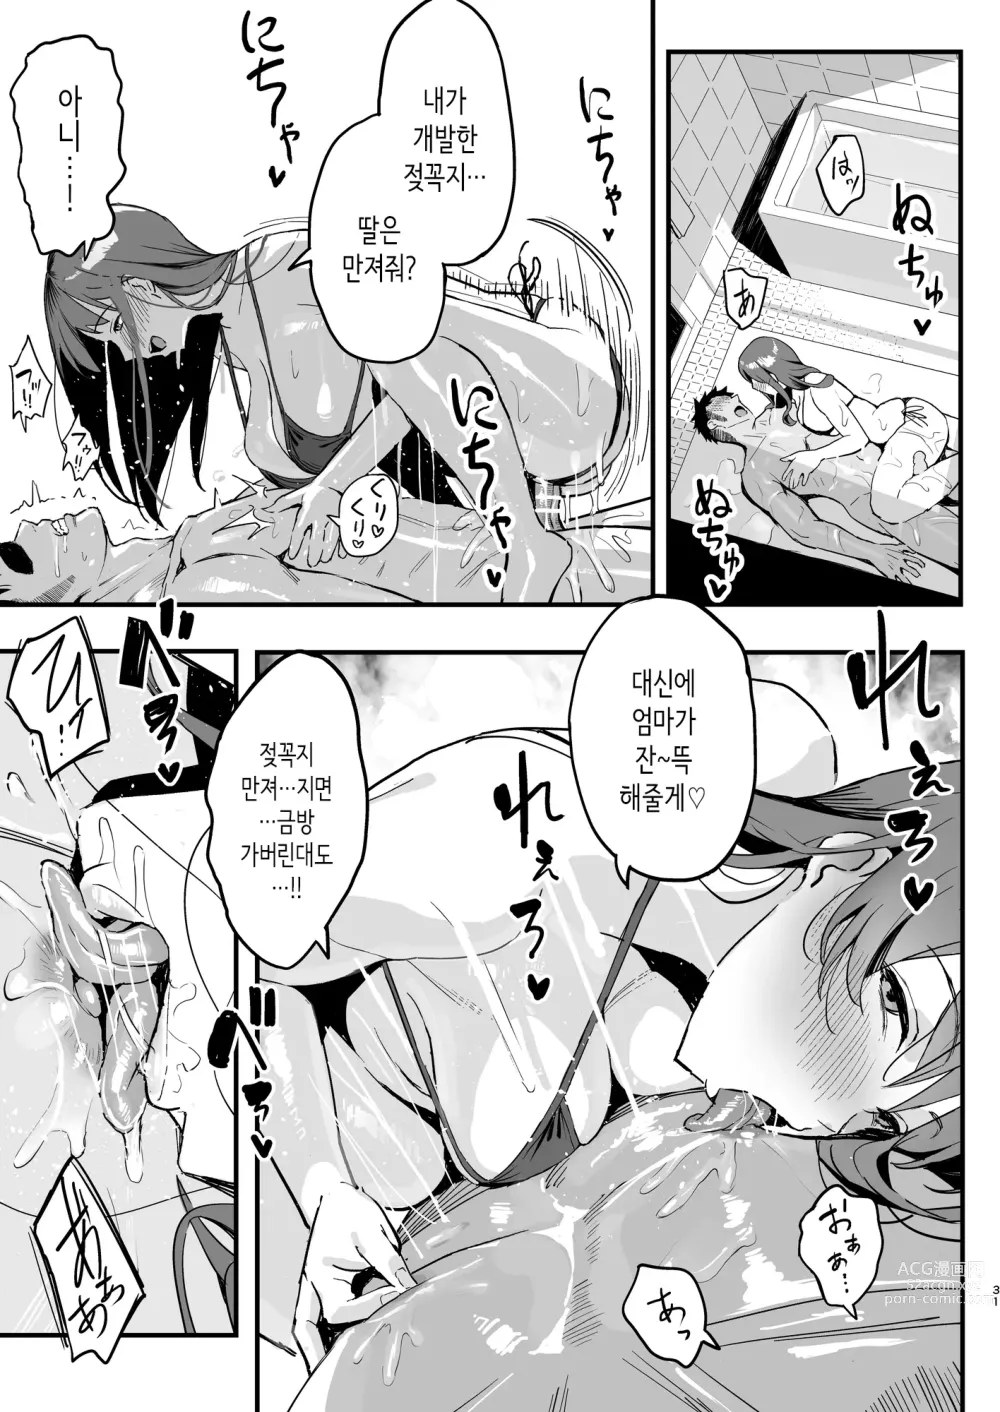 Page 30 of doujinshi 여친의 엄마는 마마카츠 엄마였다.